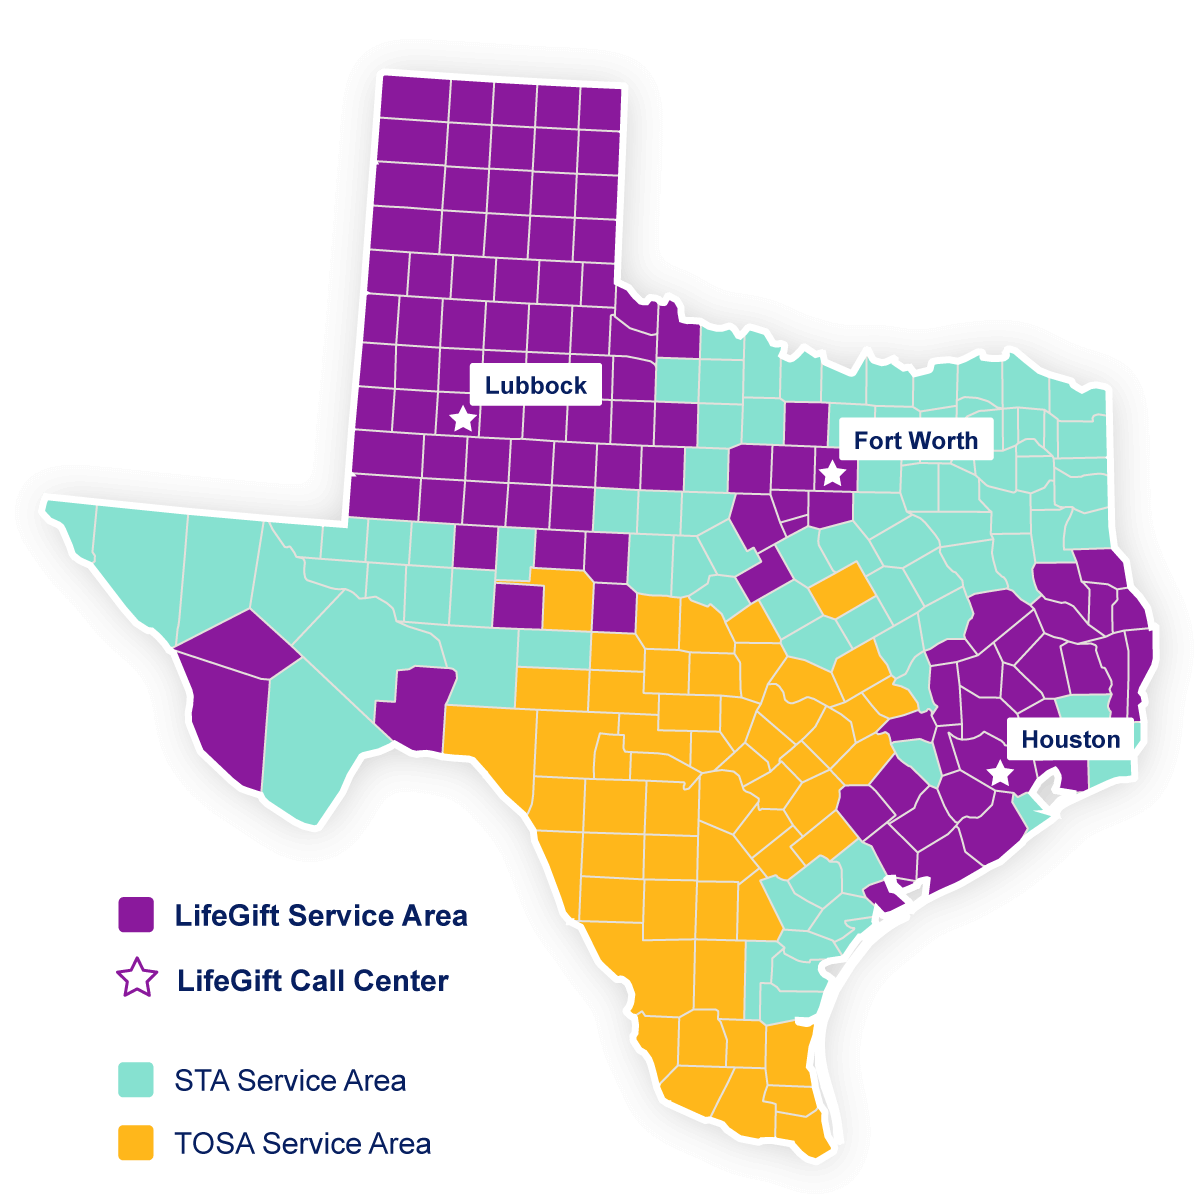 Mapa de Texas que indica las áreas de servicio de LifeGift